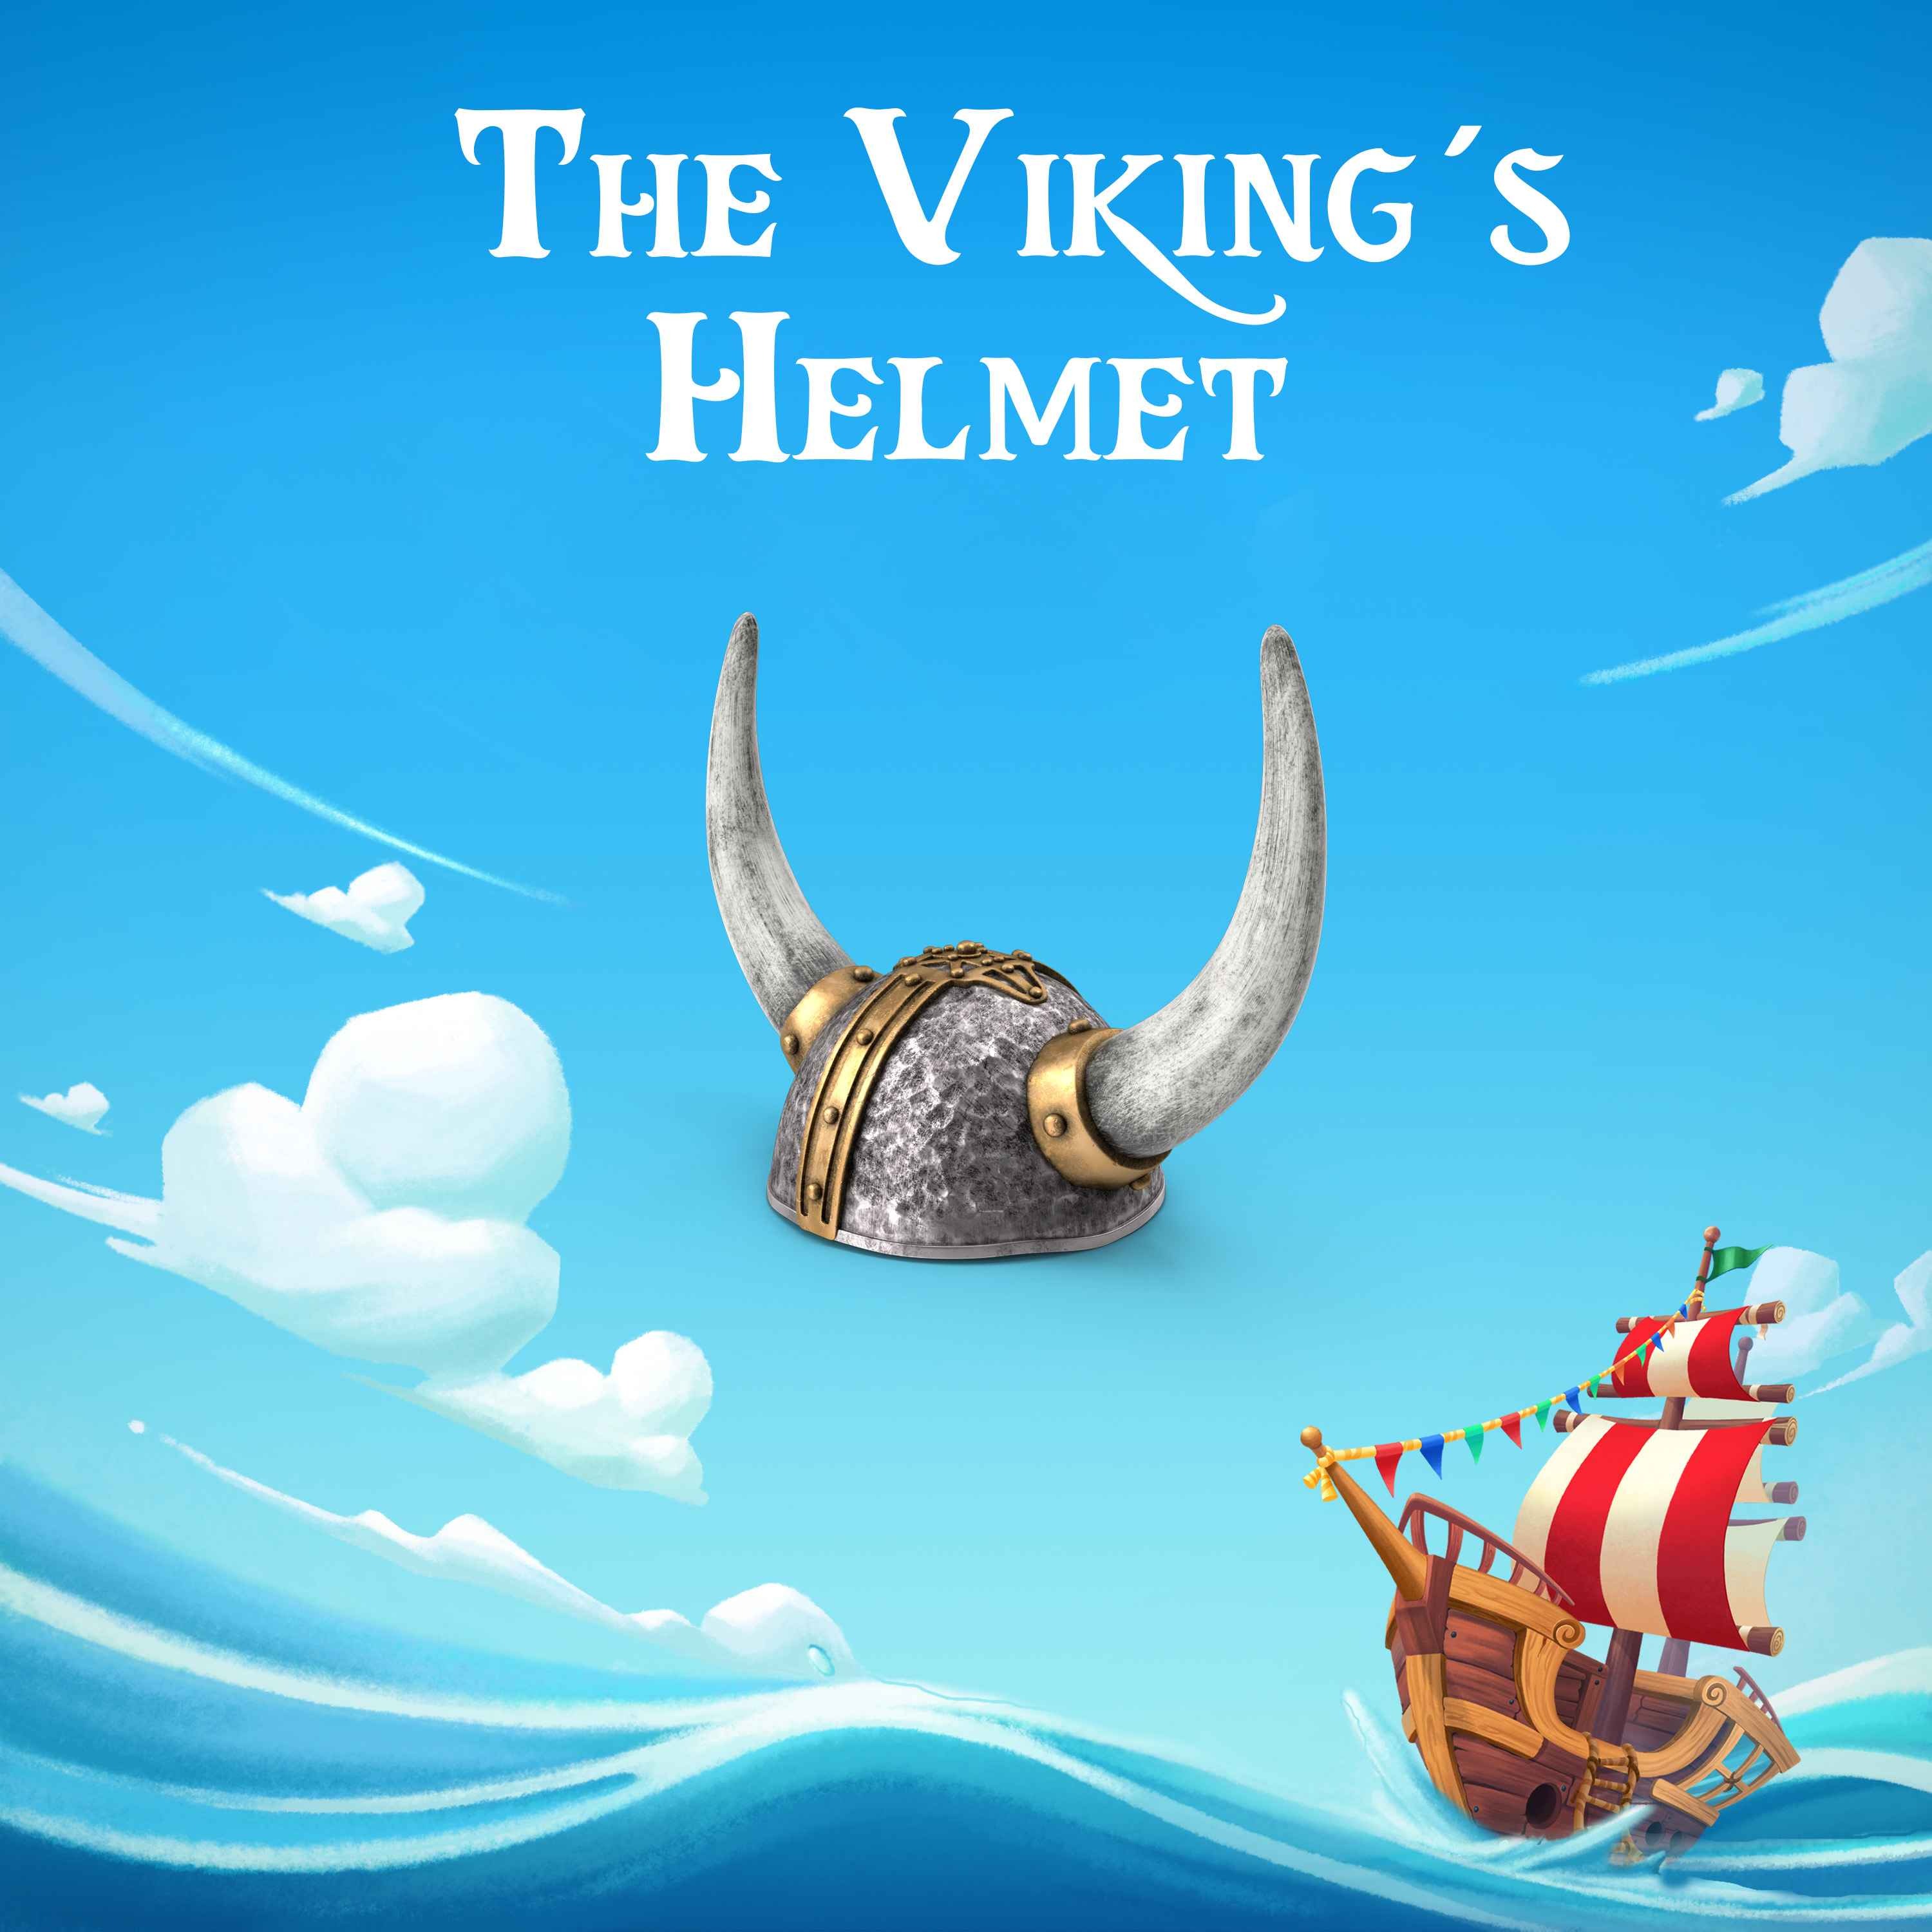 The Viking's Helmet